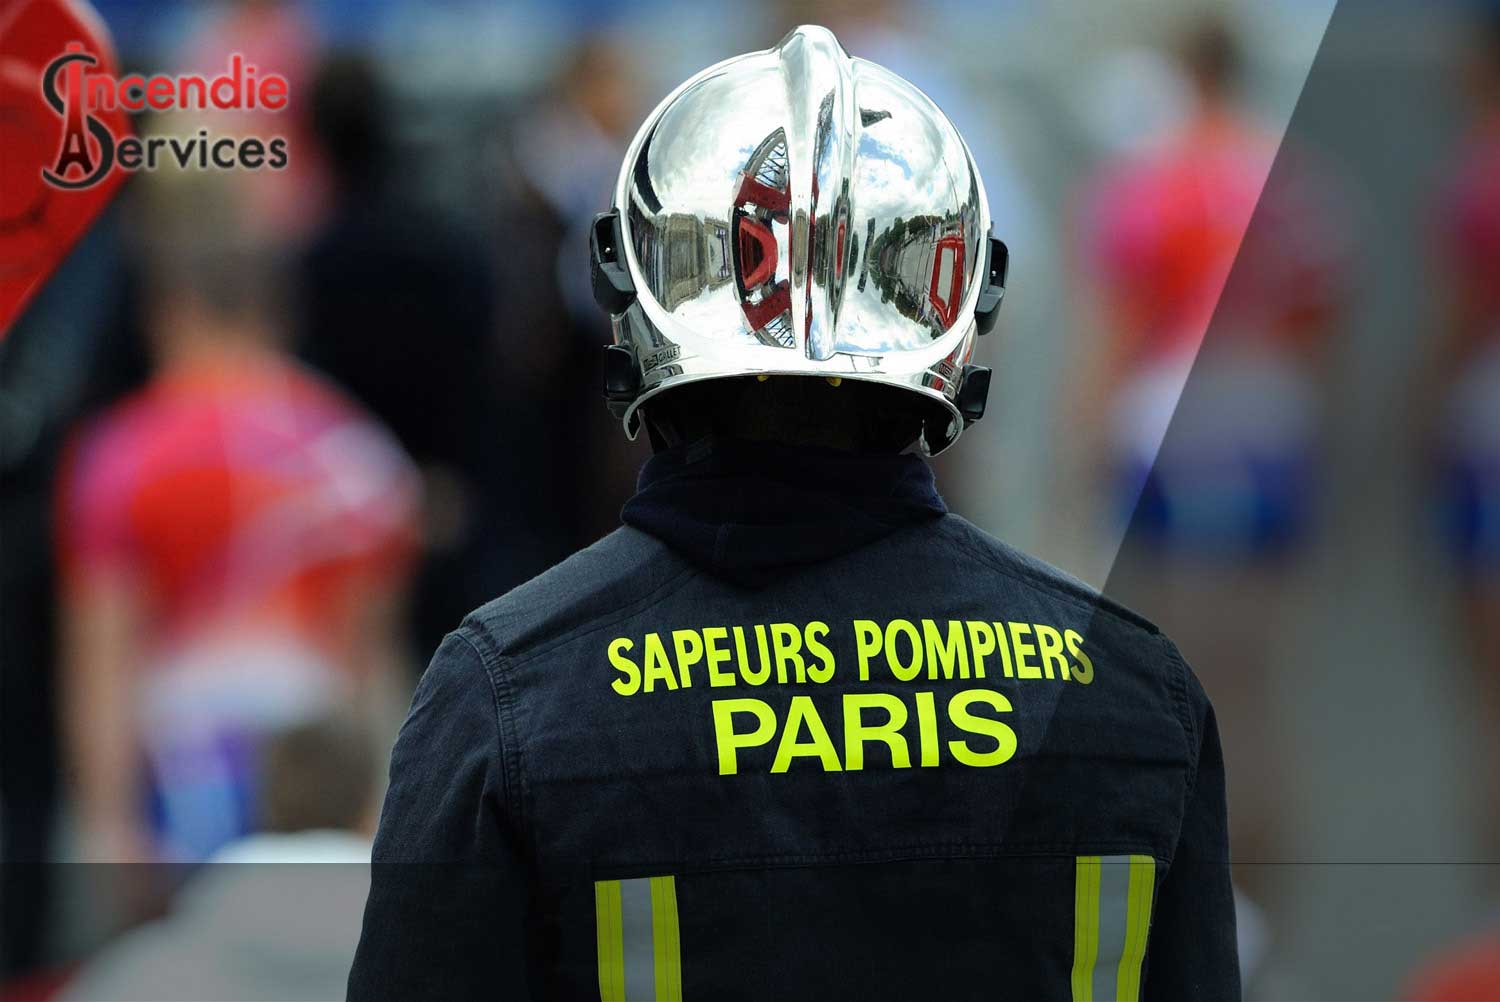 MAINTENANCE EXTINCTEUR PARIS 11 - Entreprise Certifiée | Incendie Services à Paris 75011